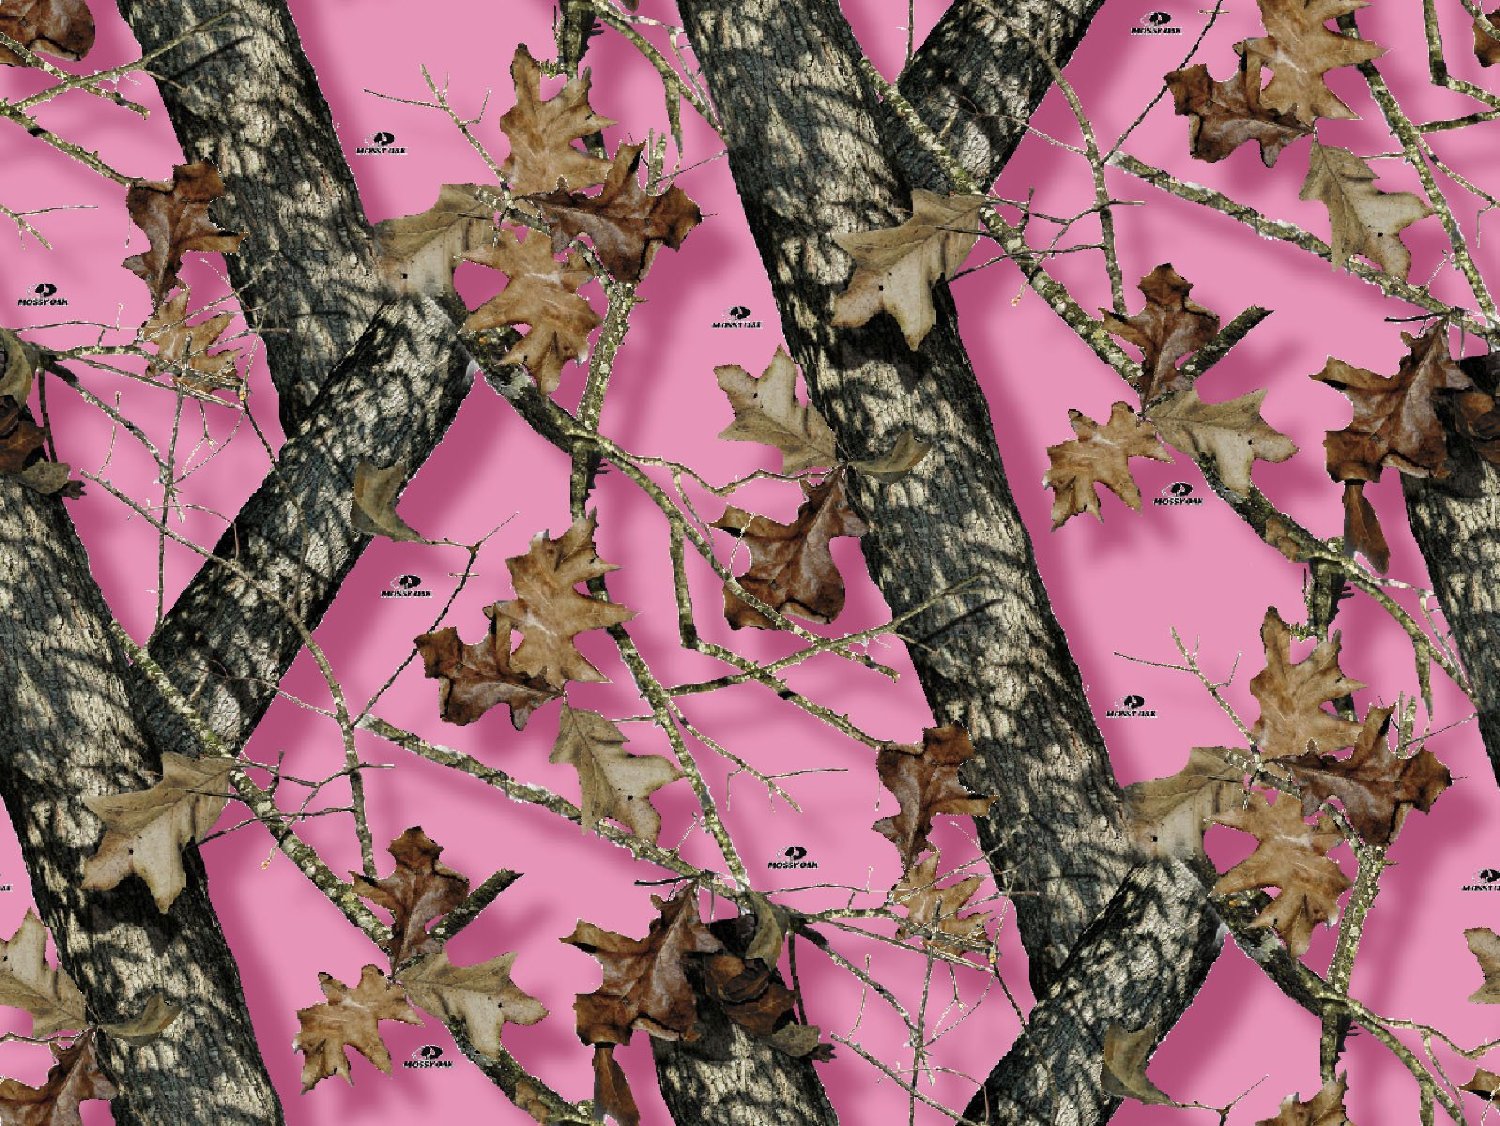 Pink Mossy Oak Desktop Wallpaper 91YDX4rlo8L SL1500 jpg